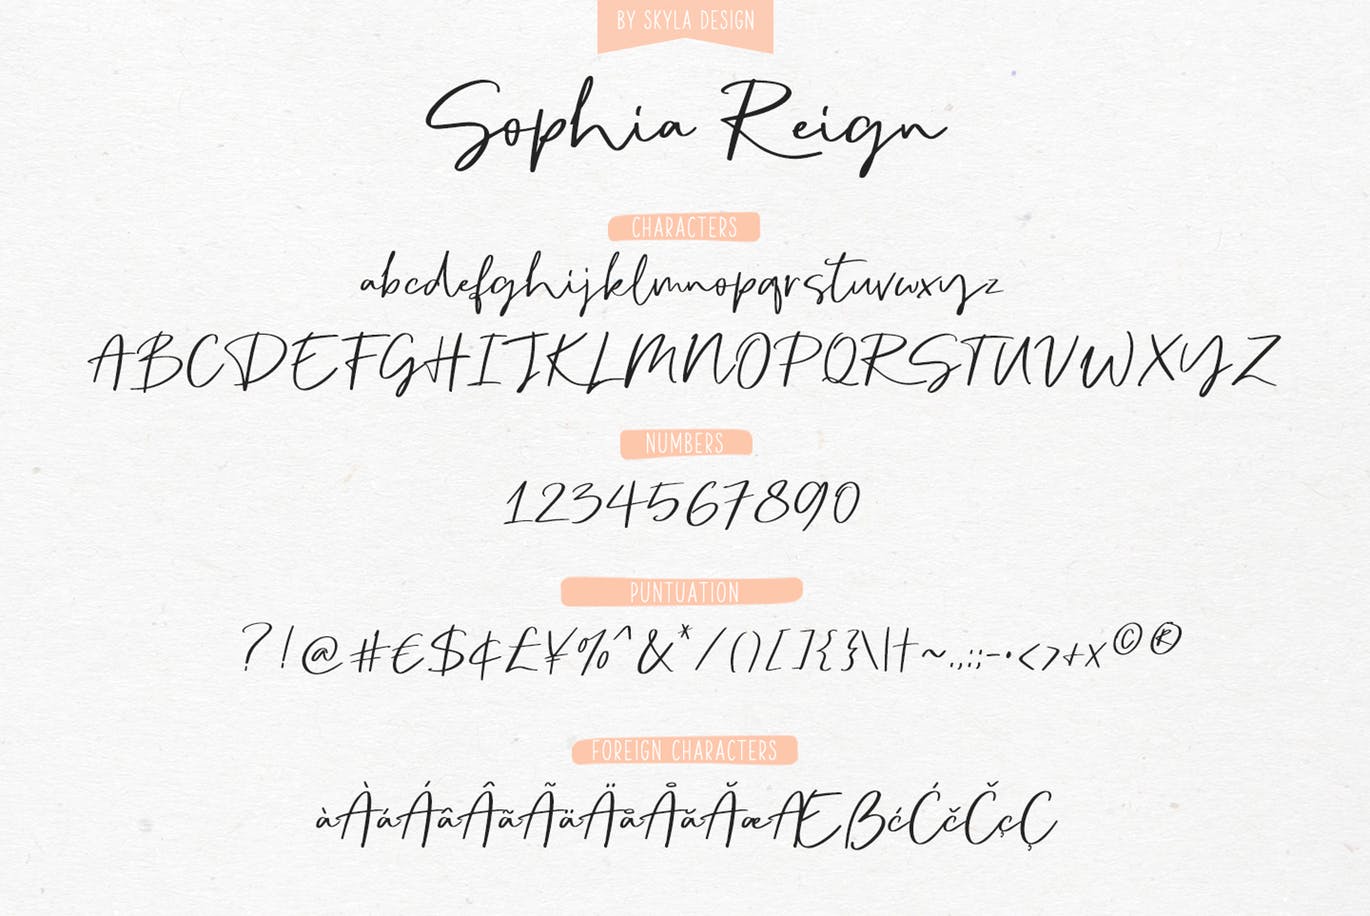 英文钢笔签名字体素材库精选&大写字母正楷字体素材库精选二重奏 Sophia Reign signature font duo插图(10)